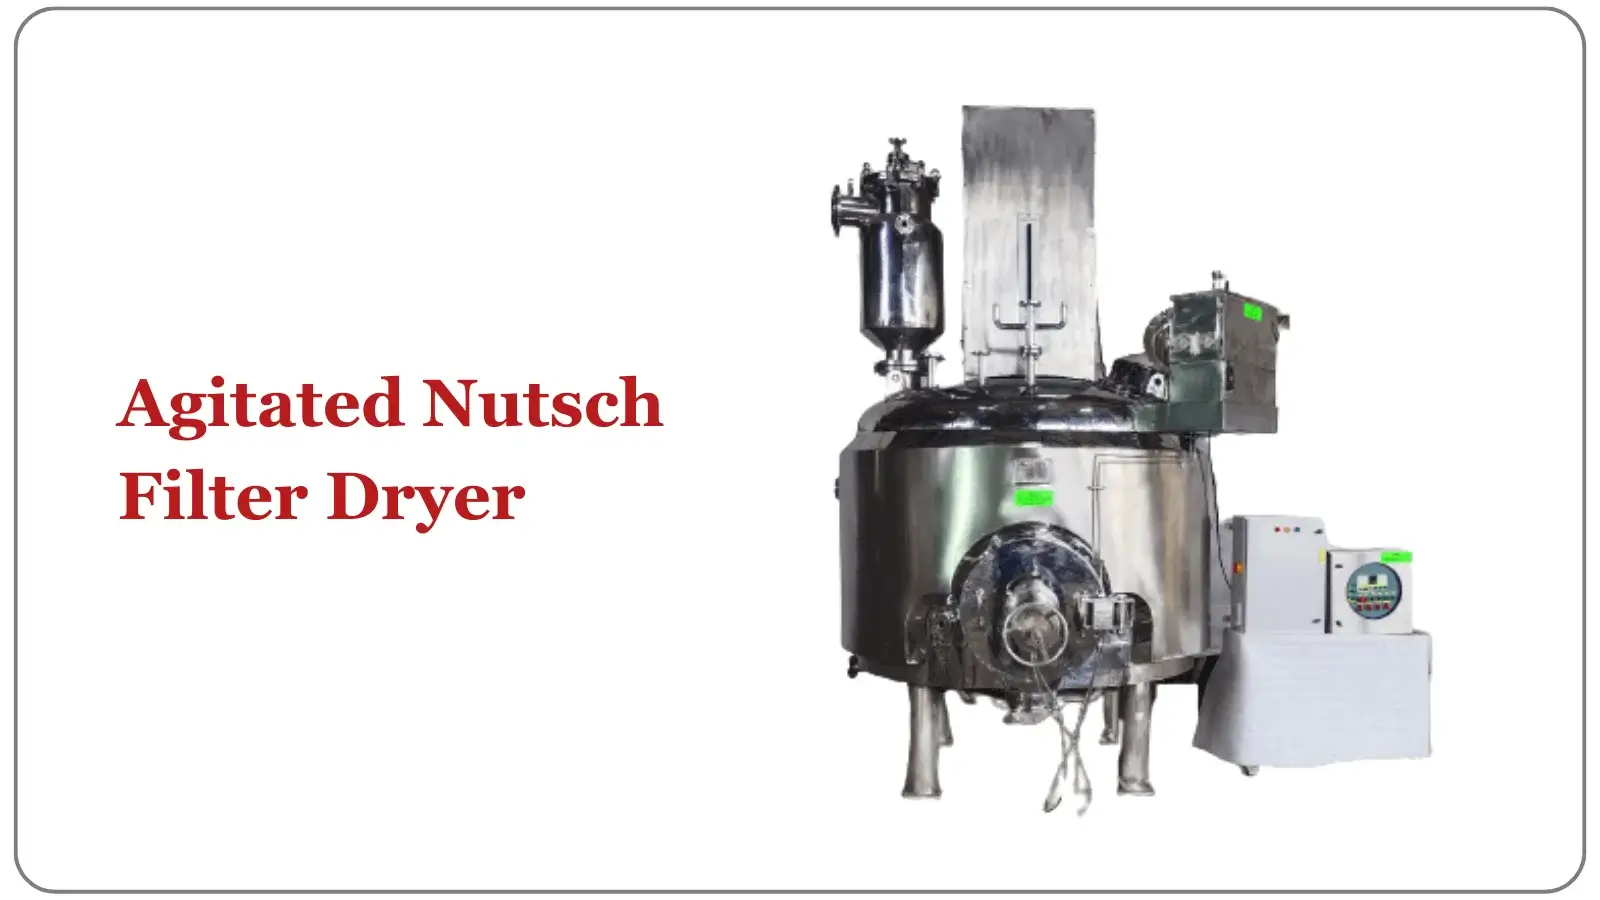 Agitated Nutsch Filter/ Dryer ( ANFD)